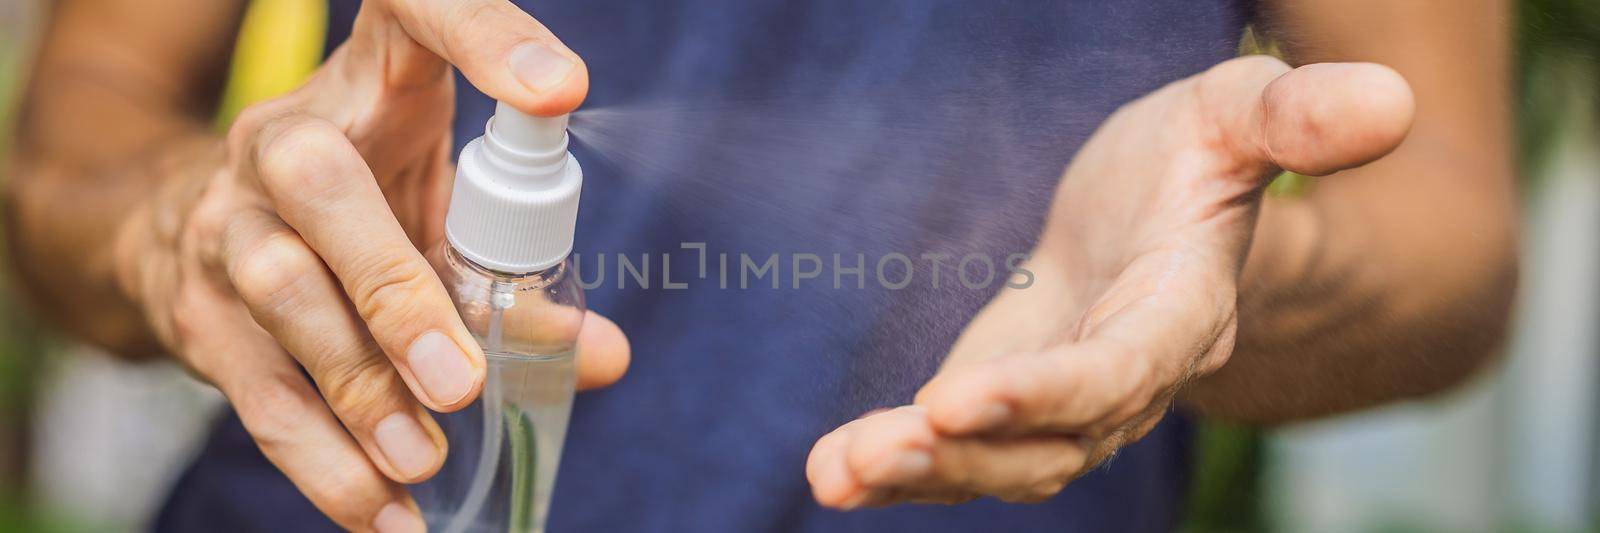 Men's hands using wash hand sanitizer gel. BANNER, LONG FORMAT